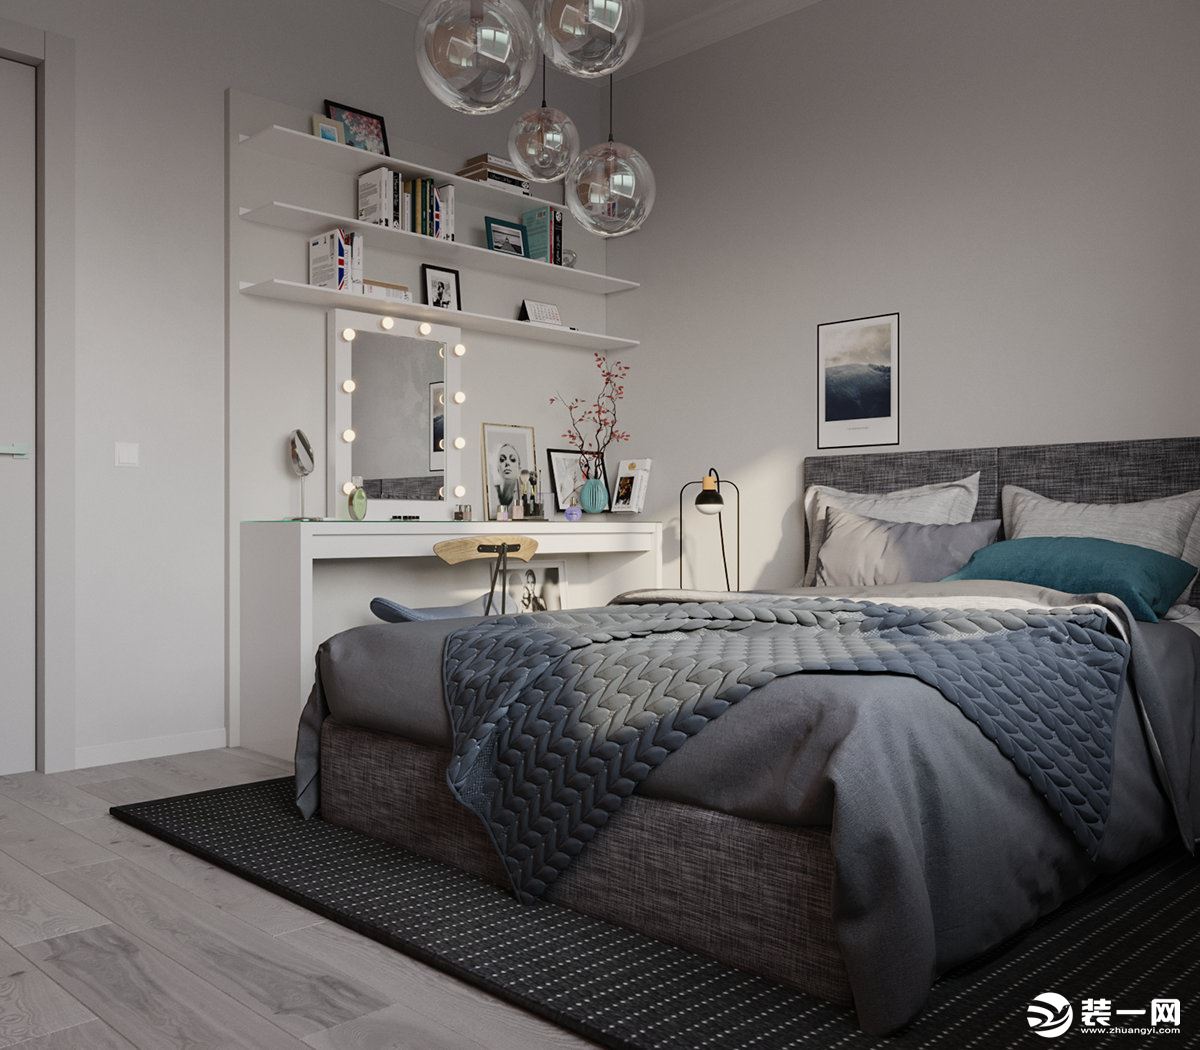 北欧风格设计的卧室总是包裹感强烈。环抱的感觉非常温馨，让人不禁想钻进床里舒舒服服的睡上一觉。贴心的明